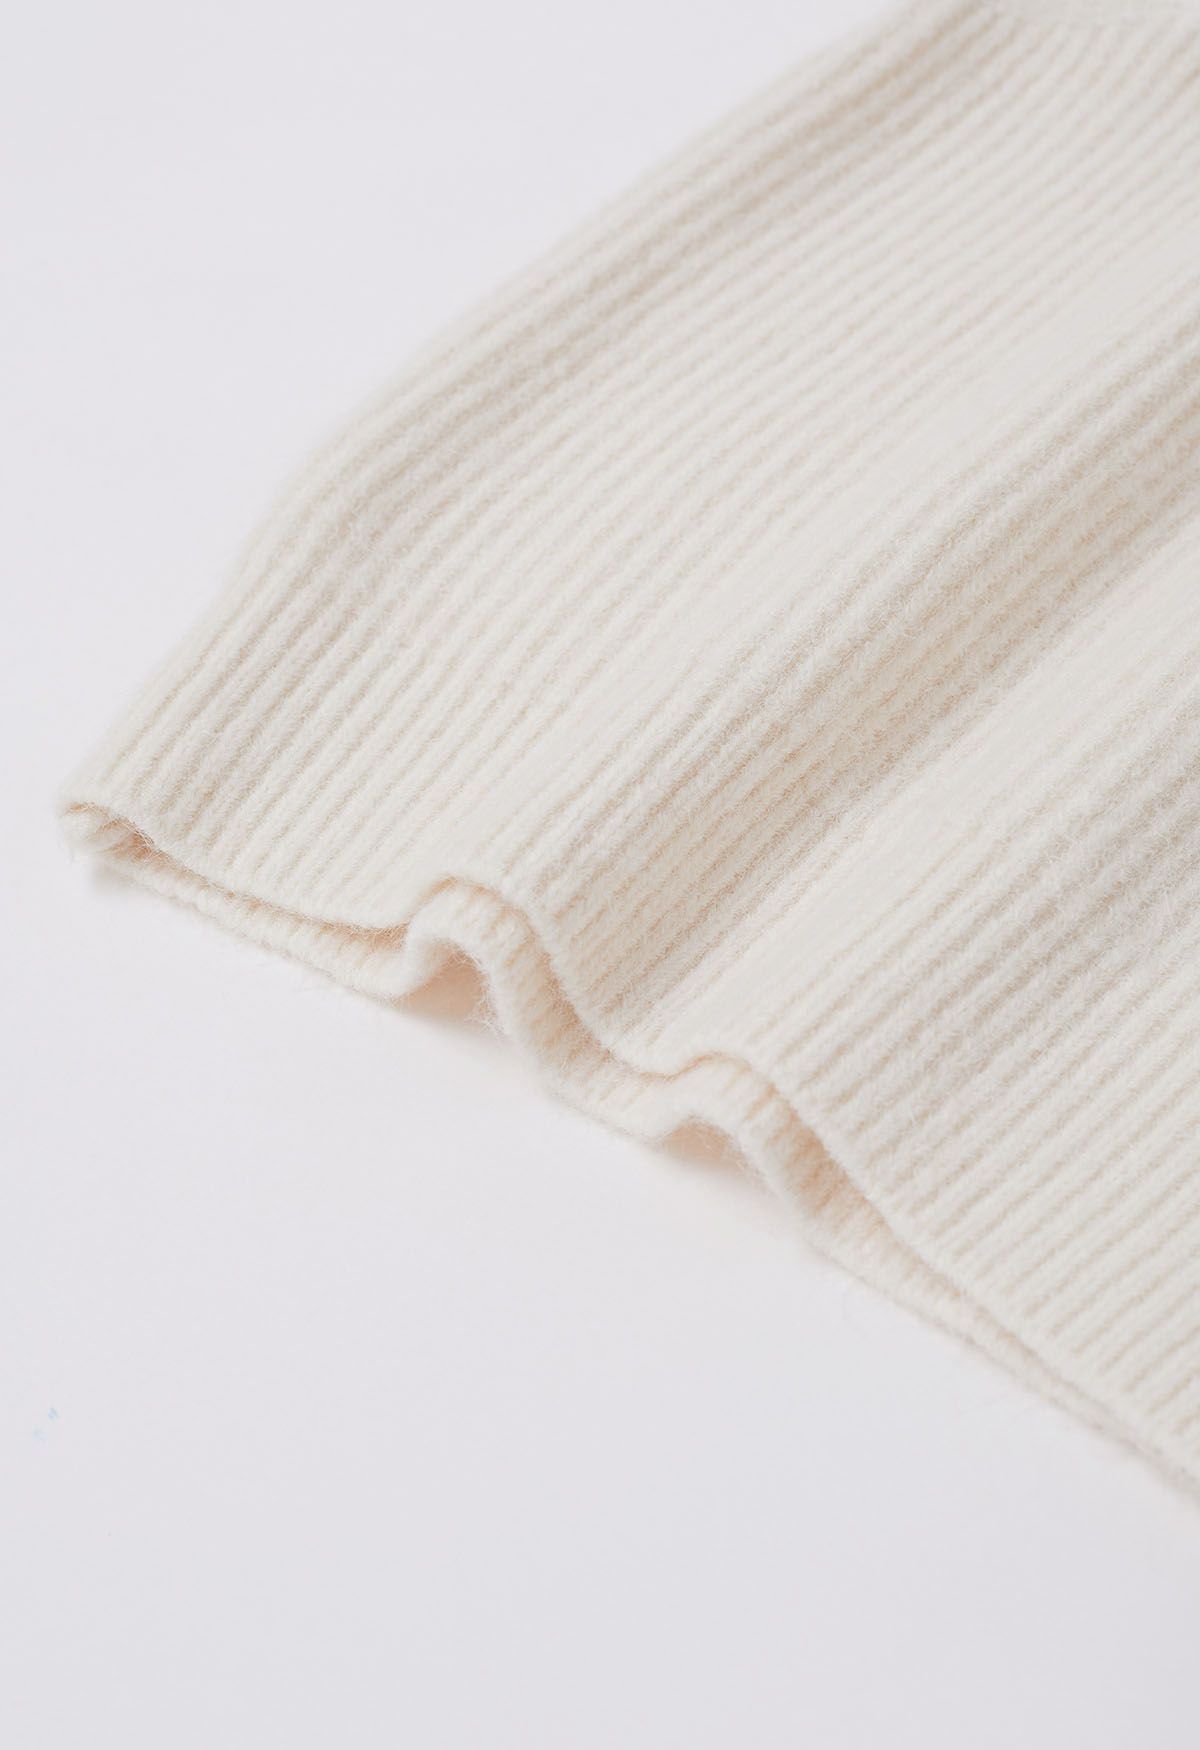 Solid Turtleneck Knit Vest in Ivory